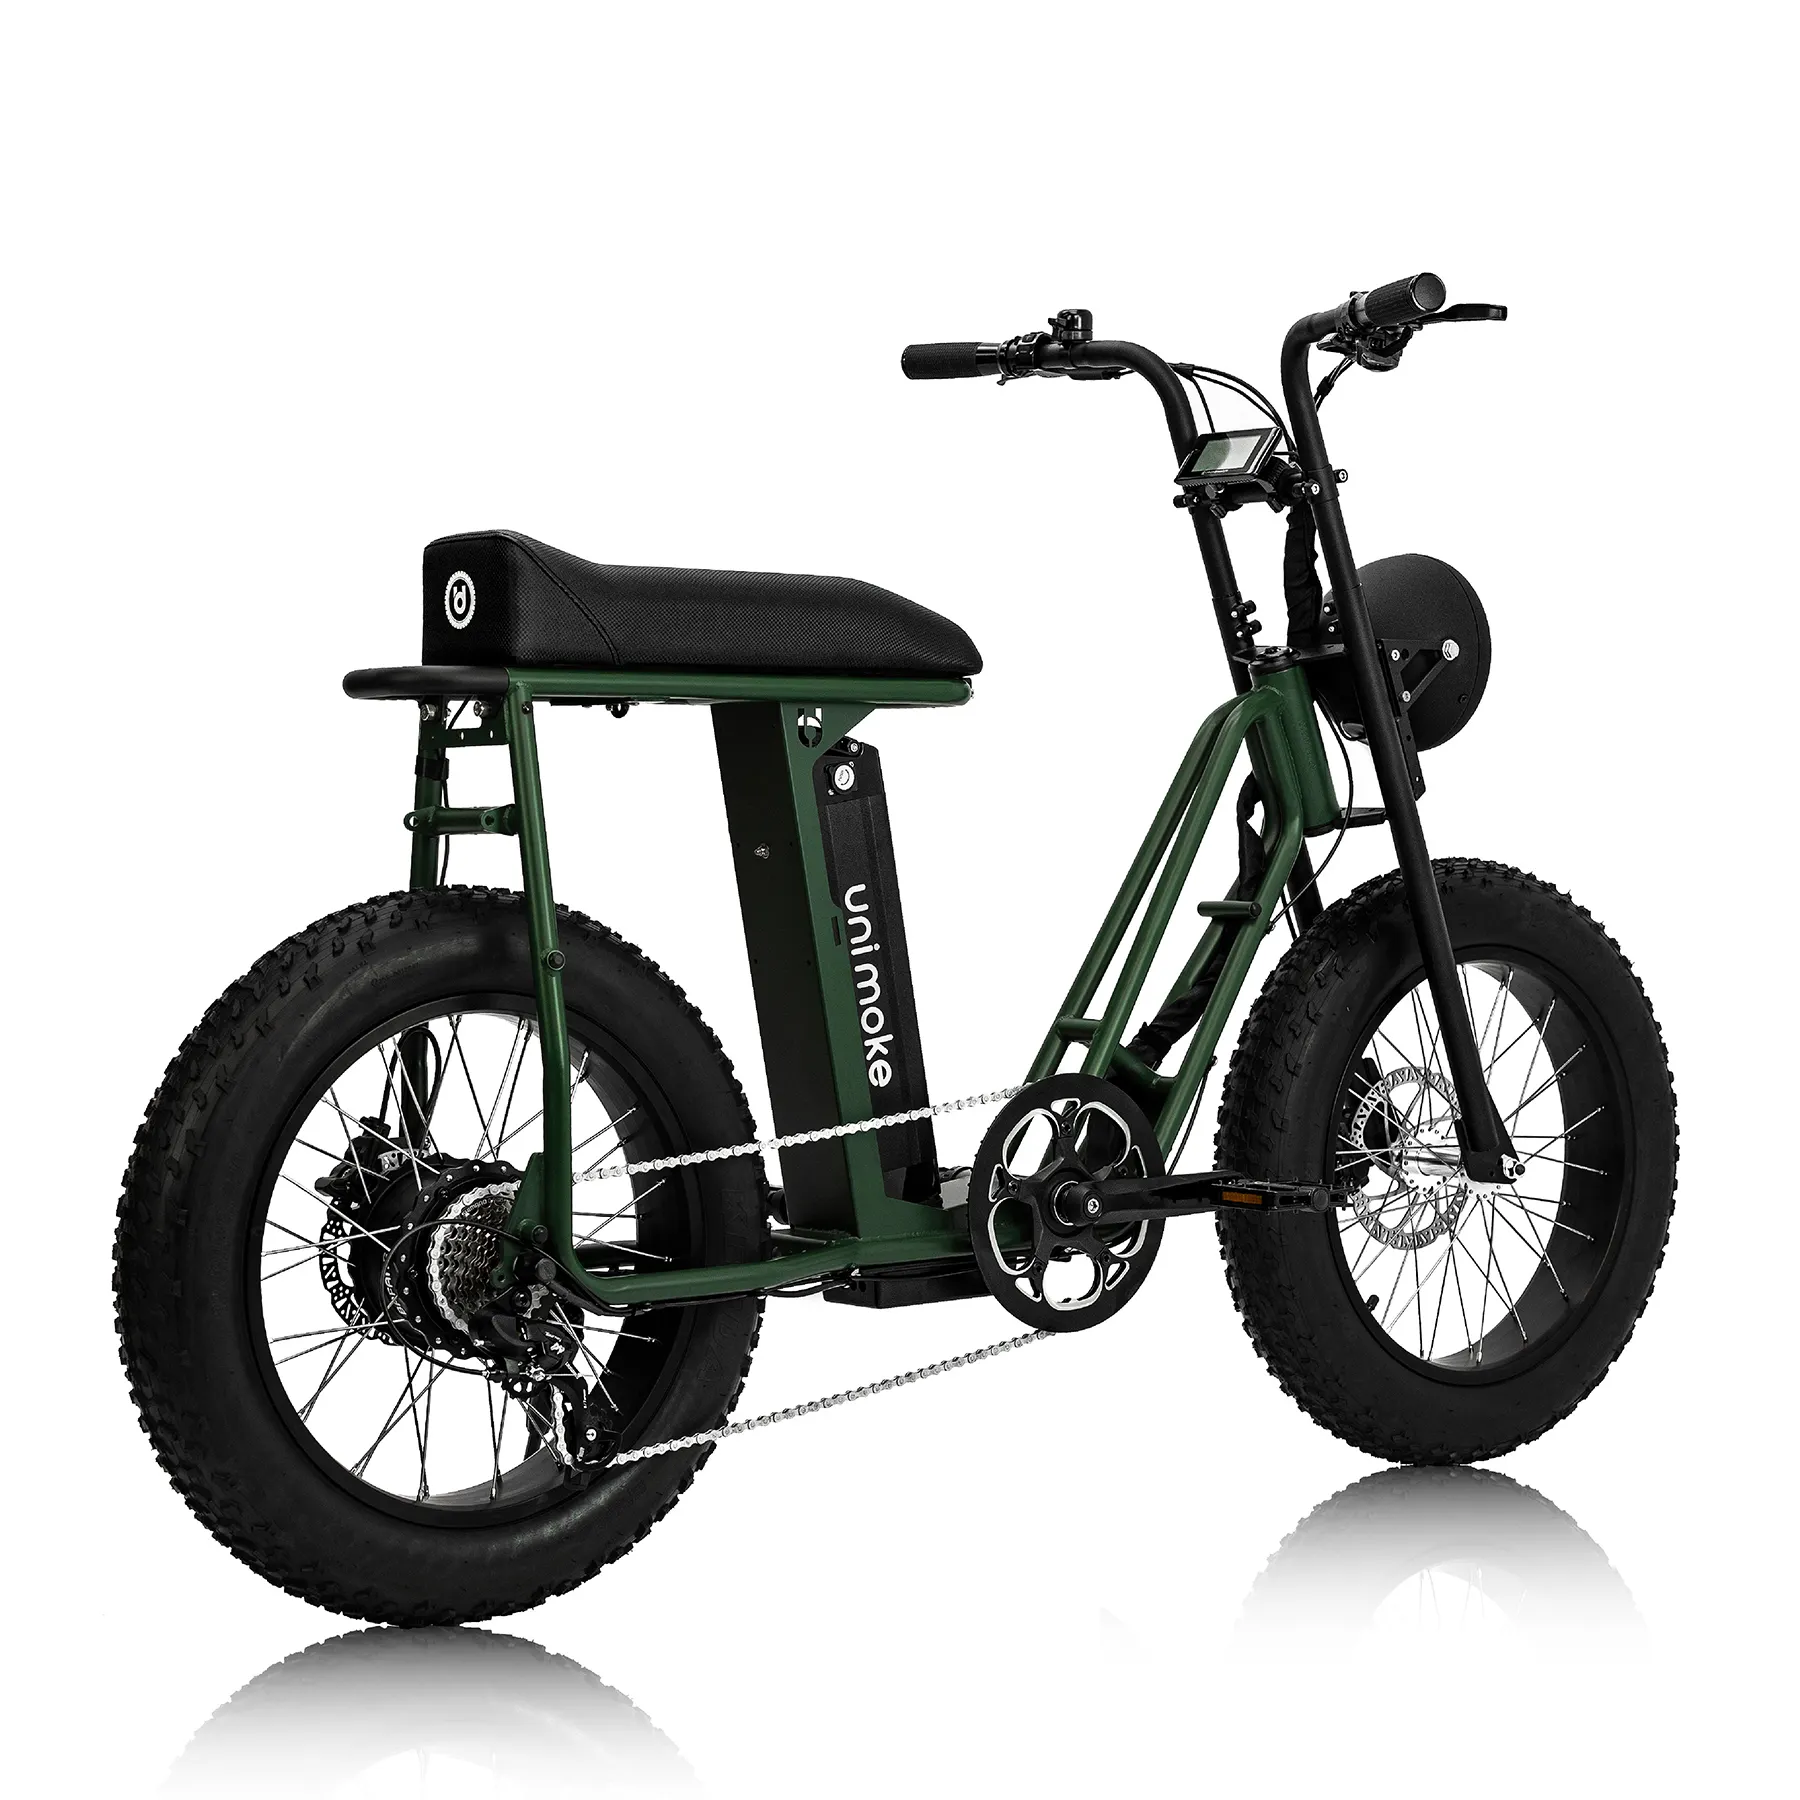 Agent/distributeur vélo électrique e-bike couleur verte Unimoke SW de Urban Drivestyle city fatbike light off-road